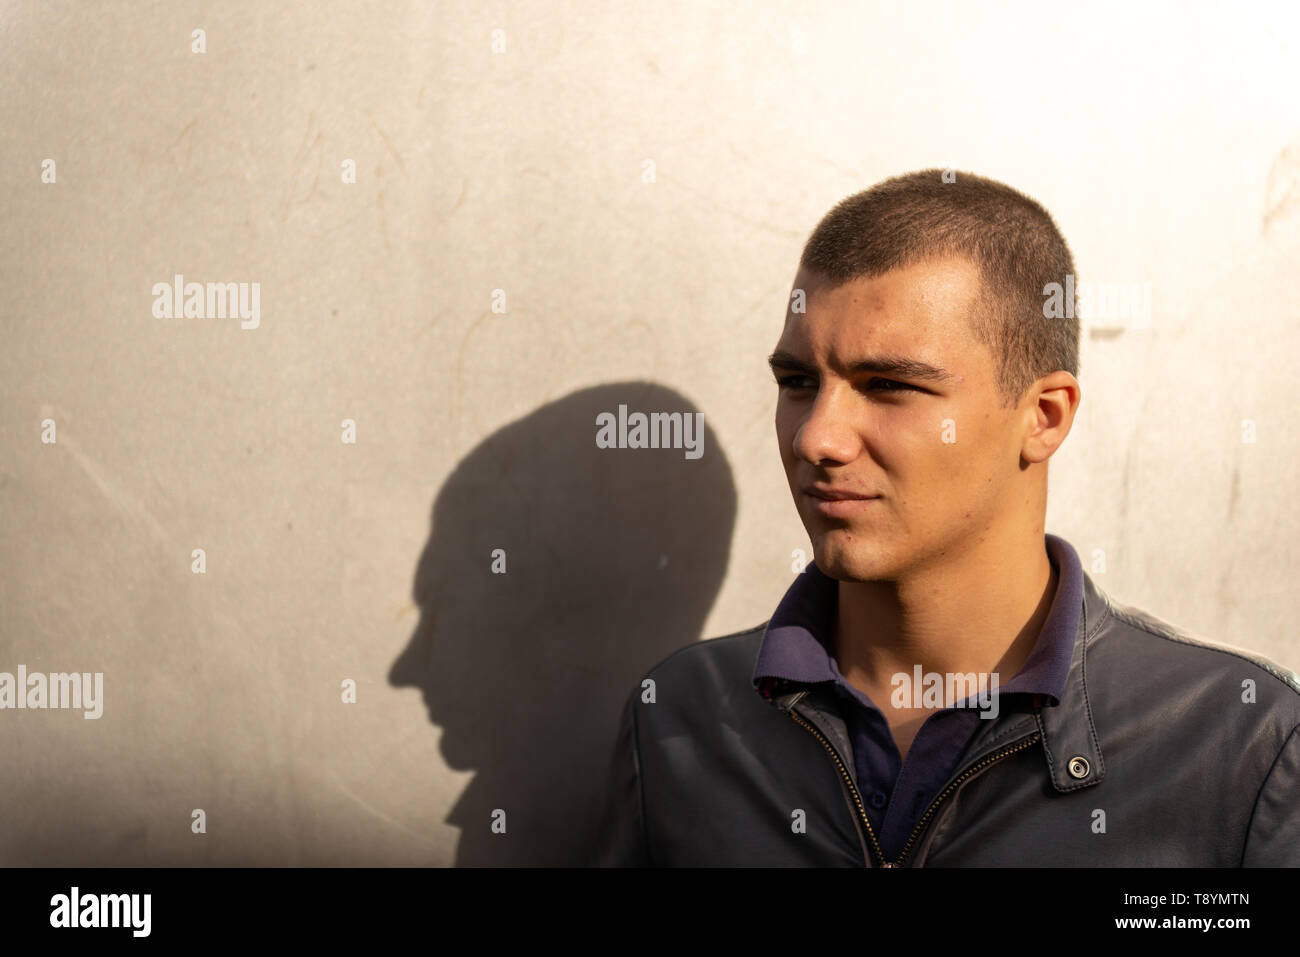 Porträt eines 20-30-jährigen jungen Mannes und Schattens, der wegblickt, und hell beleuchtete Hintergrundwand Stockfoto